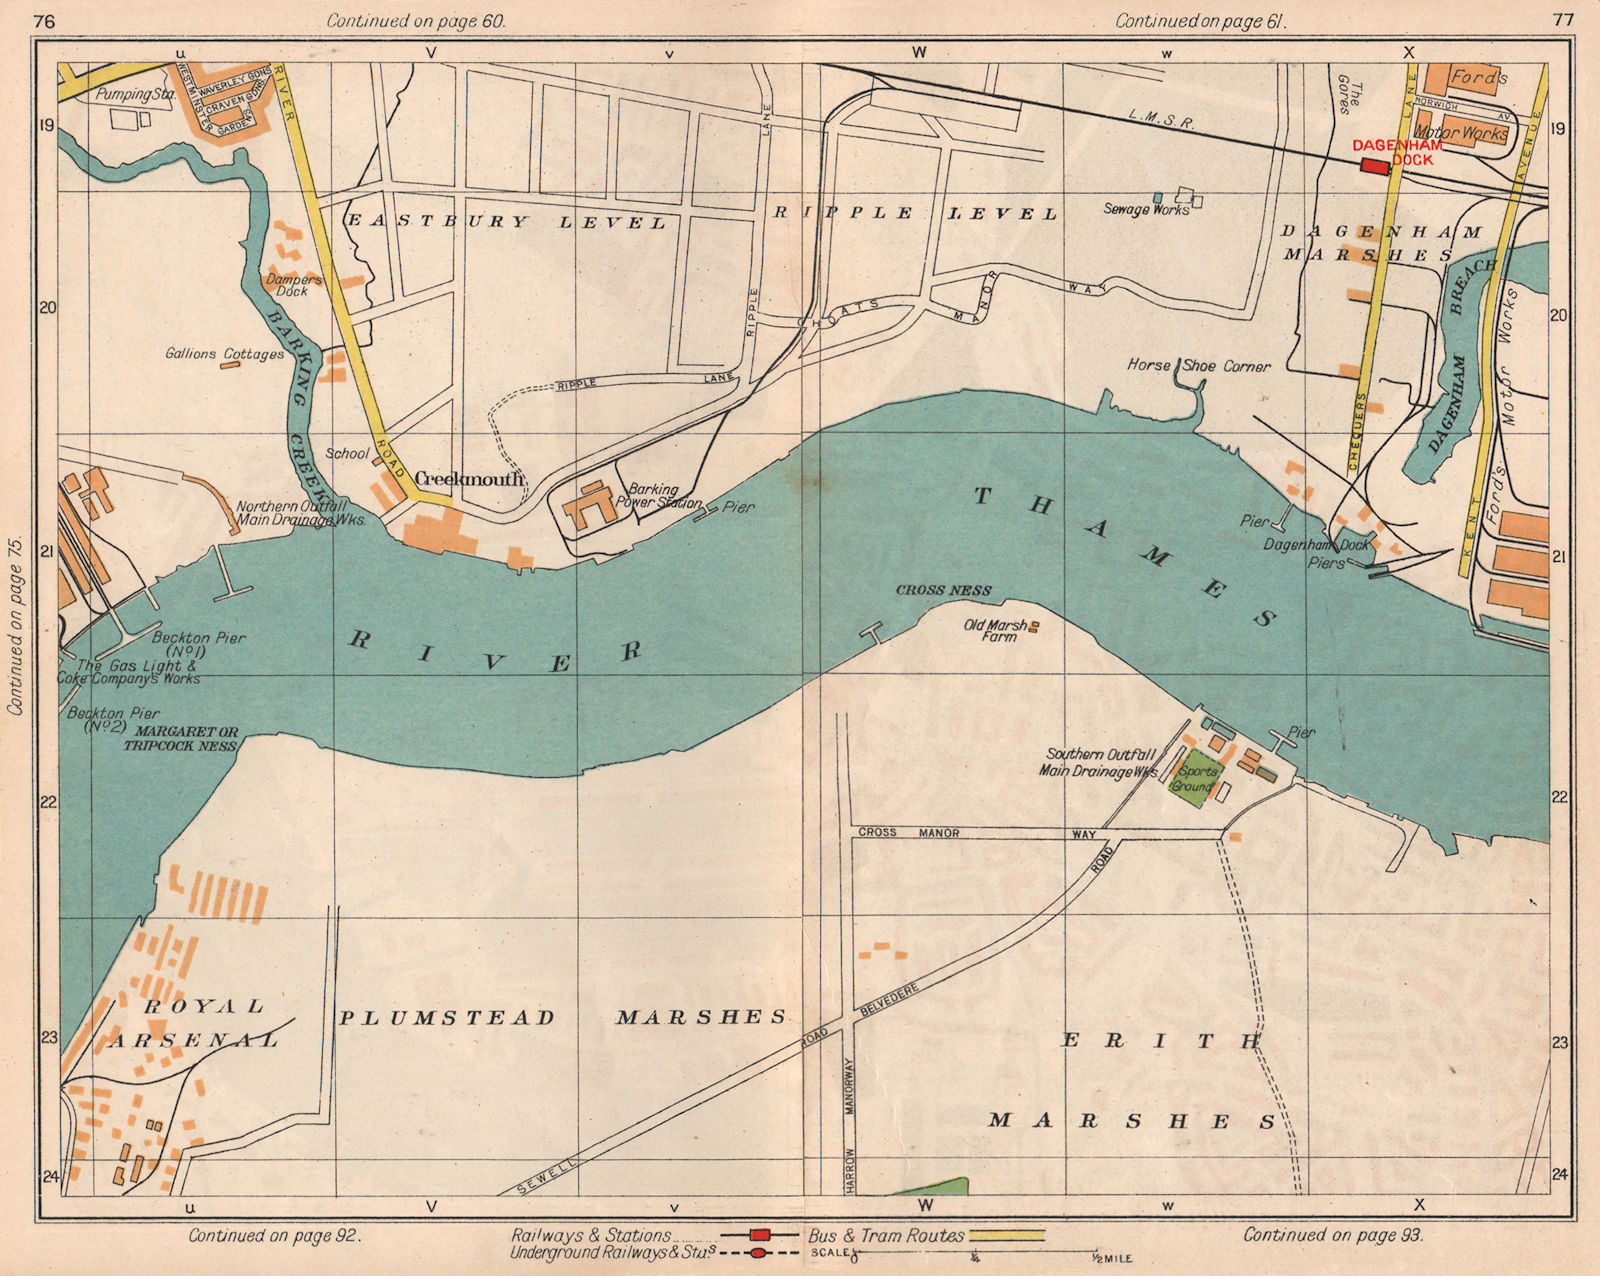 E LONDON. Creekmouth Plumstead/Dagenham/Erith Marshes Dagenham Dock 1938 map